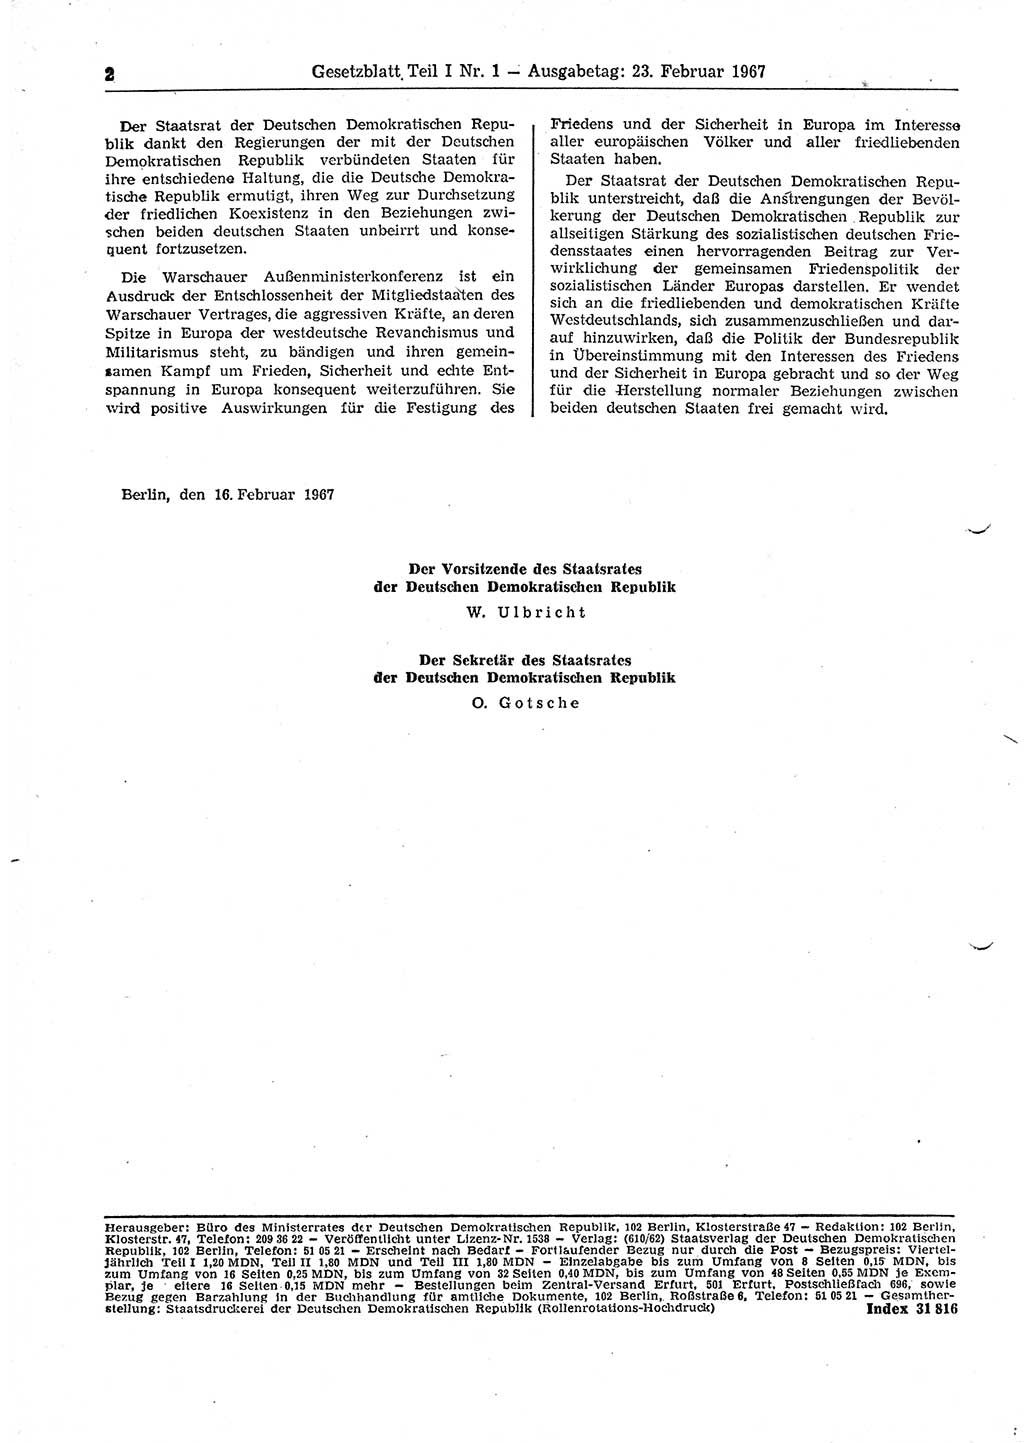 Gesetzblatt (GBl.) der Deutschen Demokratischen Republik (DDR) Teil Ⅰ 1967, Seite 2 (GBl. DDR Ⅰ 1967, S. 2)